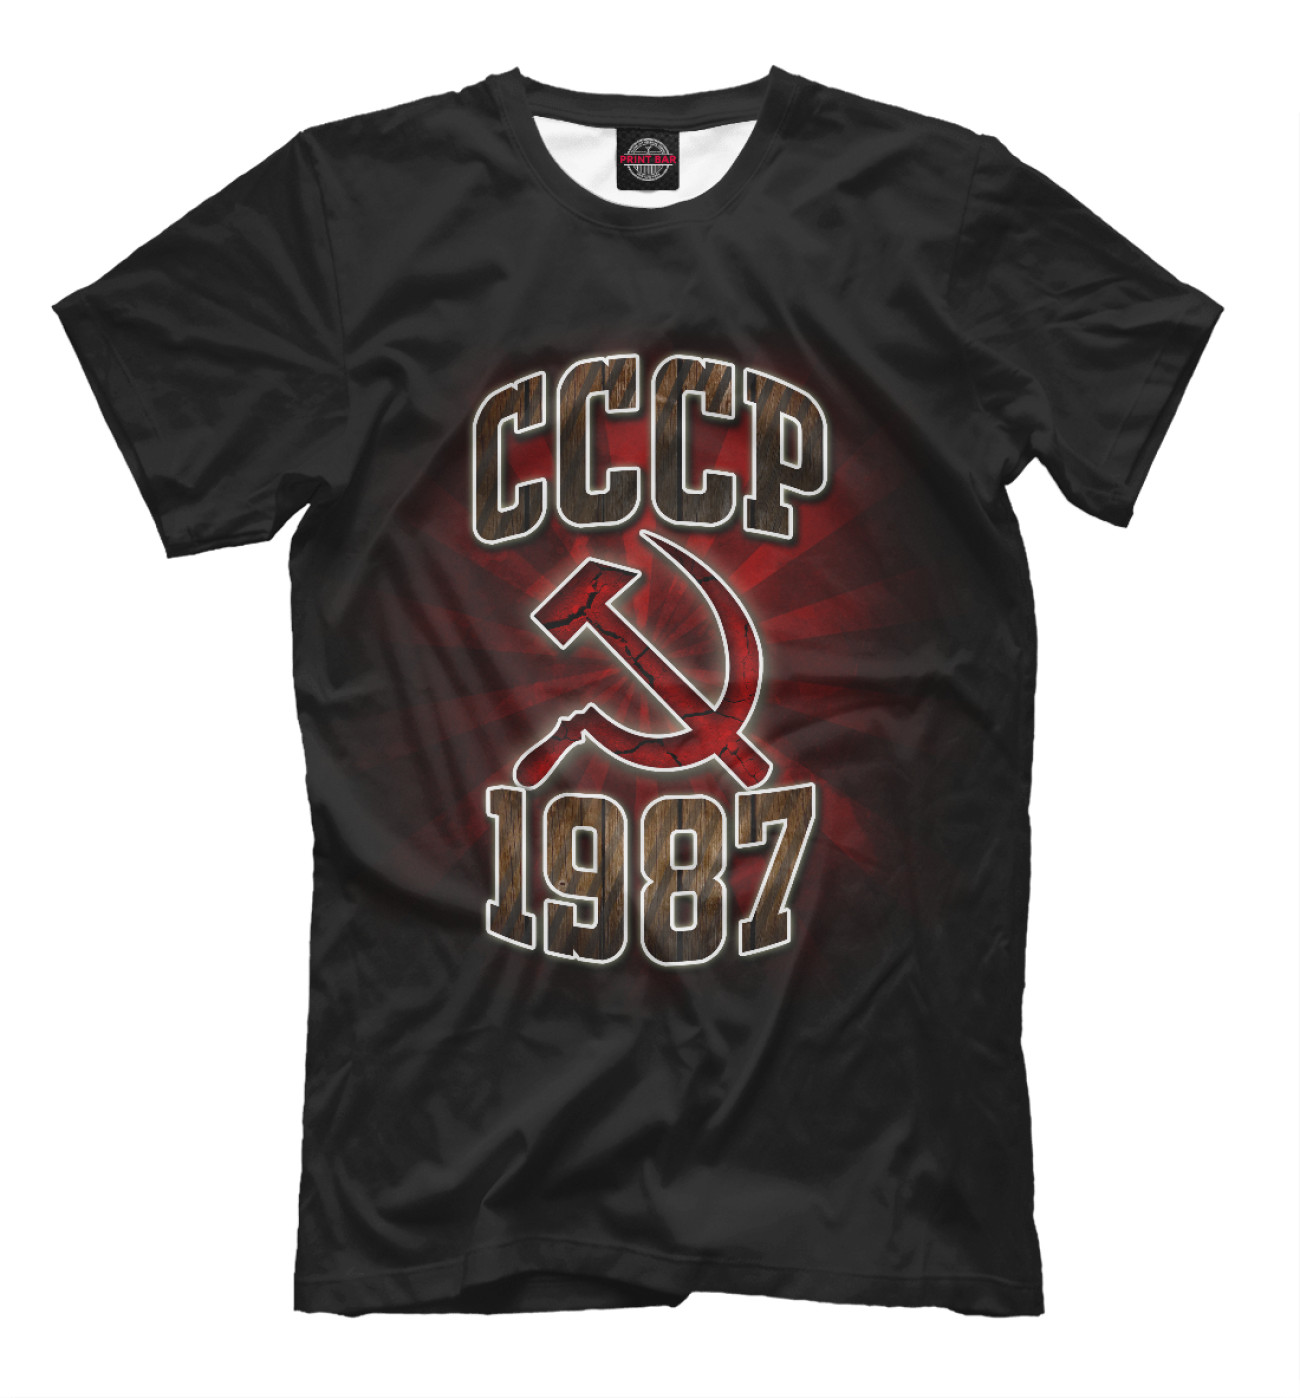 Мужская Футболка 1987, артикул: DVE-397715-fut-2